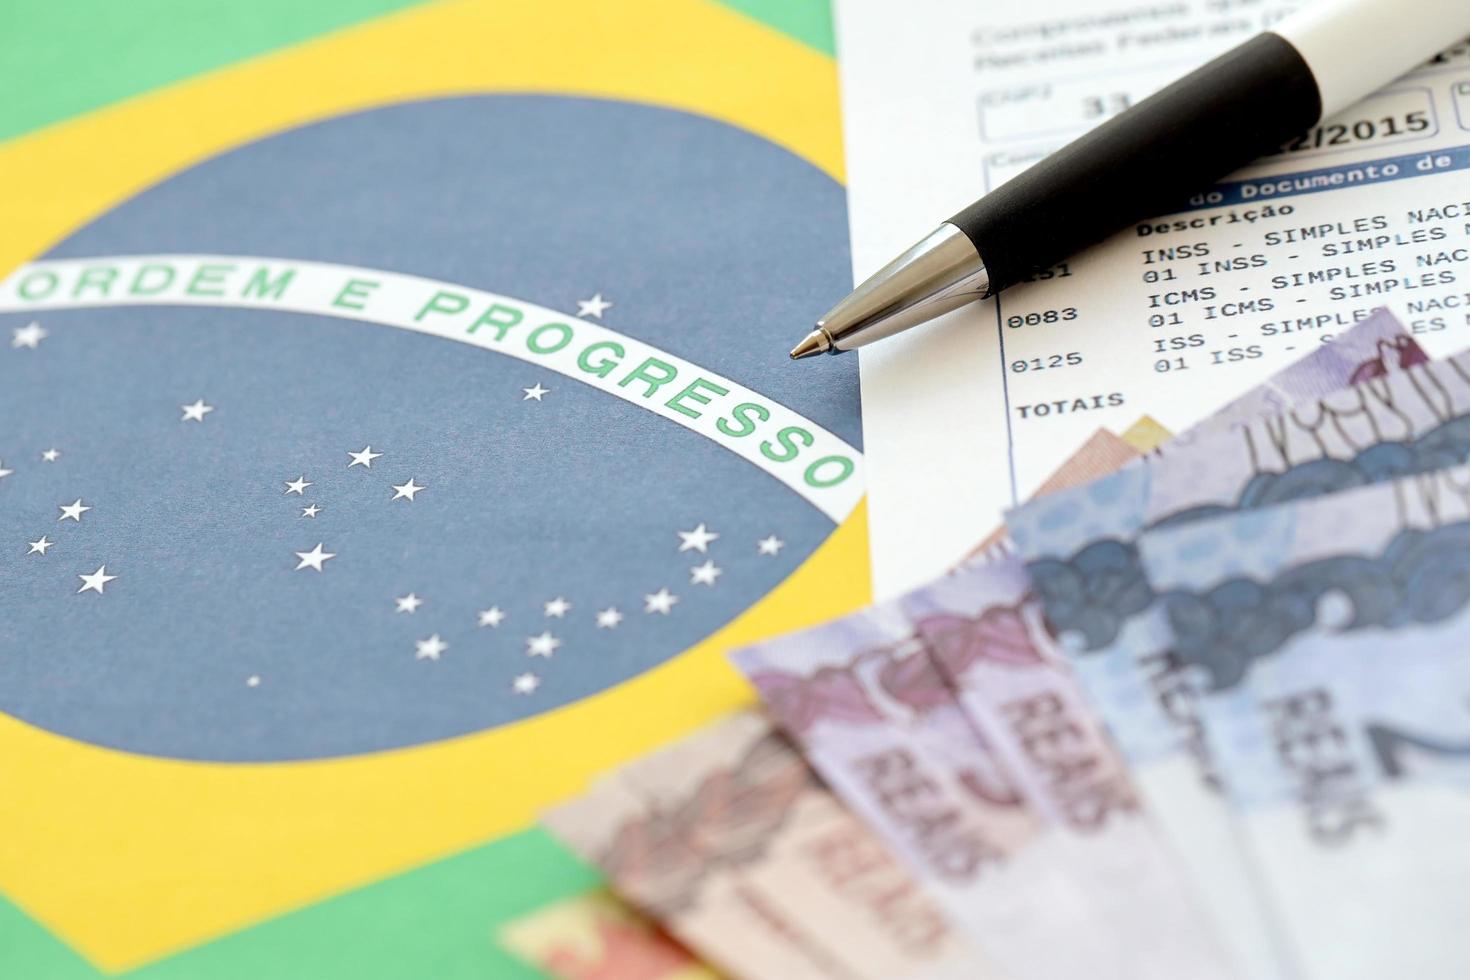 ternopil, ukraina - Maj 20, 2022 brasiliansk bevis av samling Rapportera med brasiliansk reals pengar räkningar och penna på nationell flagga bakgrund. brasiliansk Rättslig skattebetalande och beskatta rapportering foto